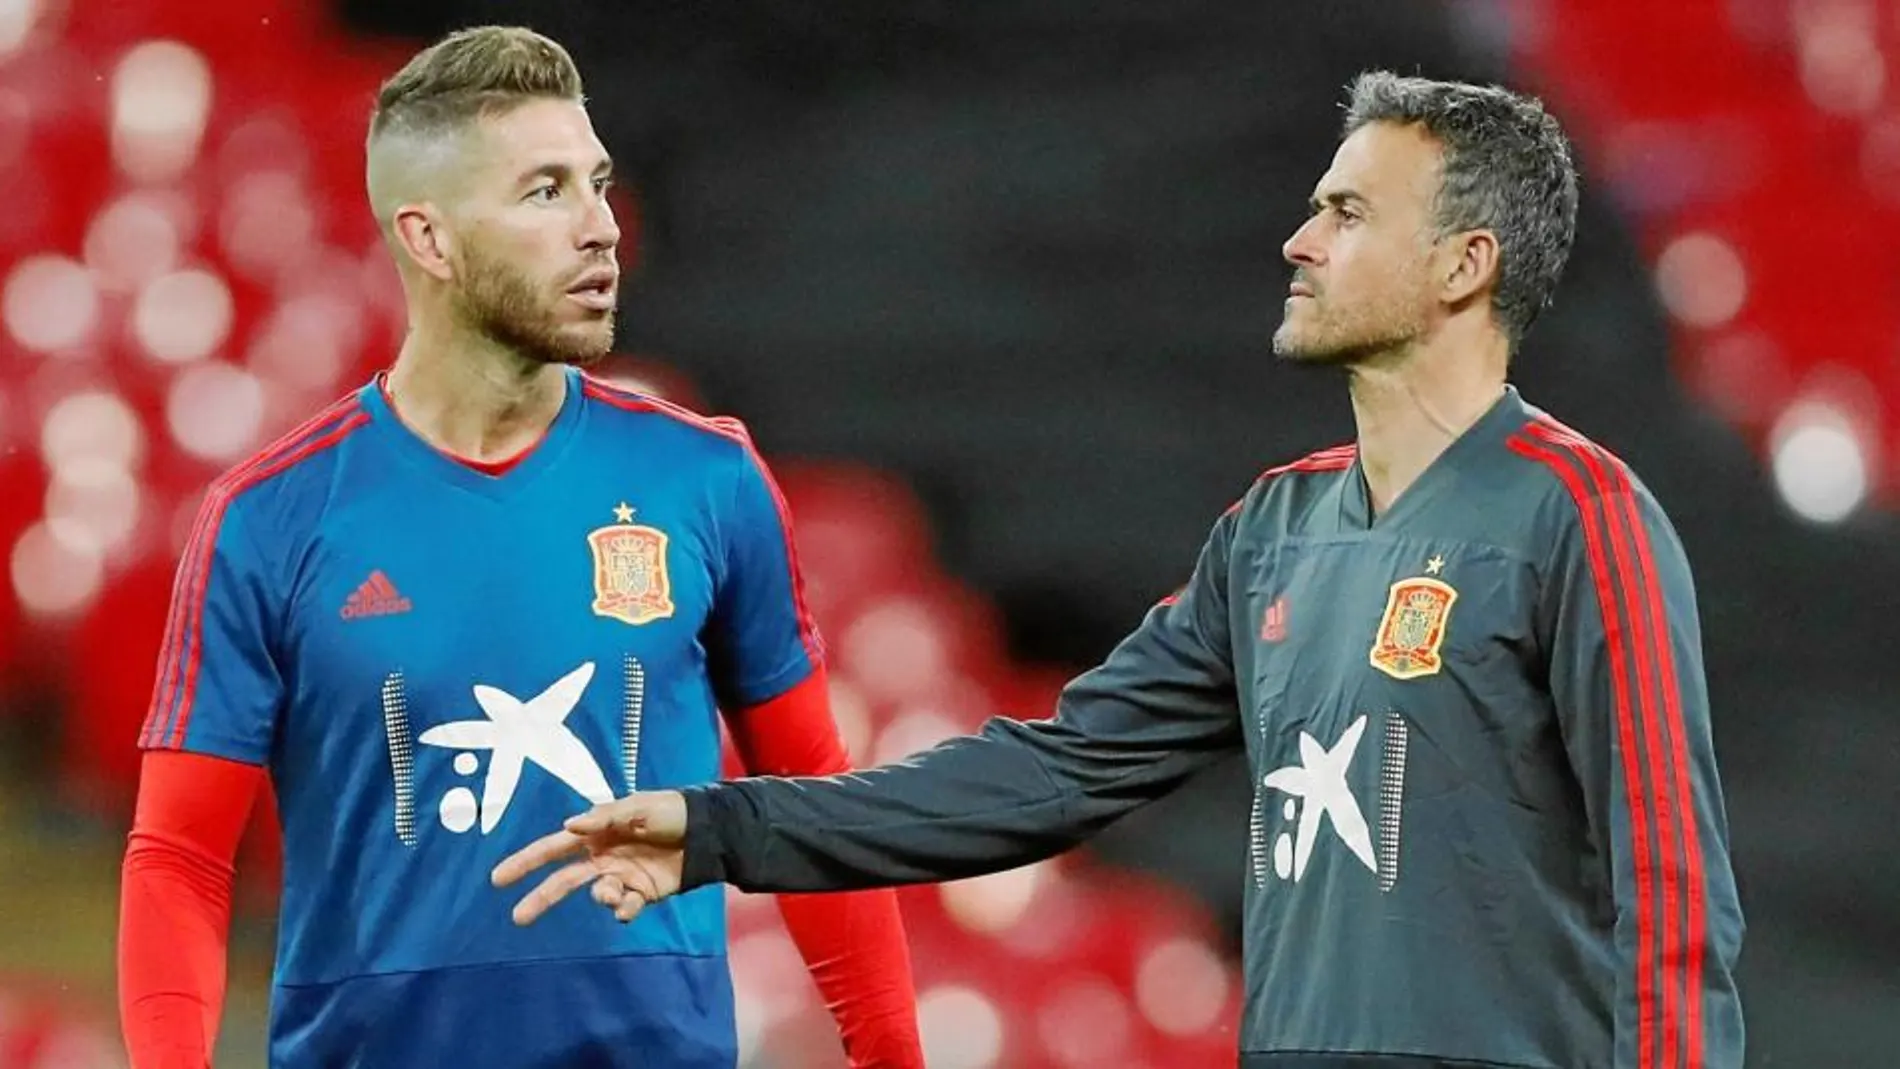 La Selección española se entrenó ayer en Wembley. Entrenador y capitán mantuvieron una charla fluida durante toda la sesión / Efe